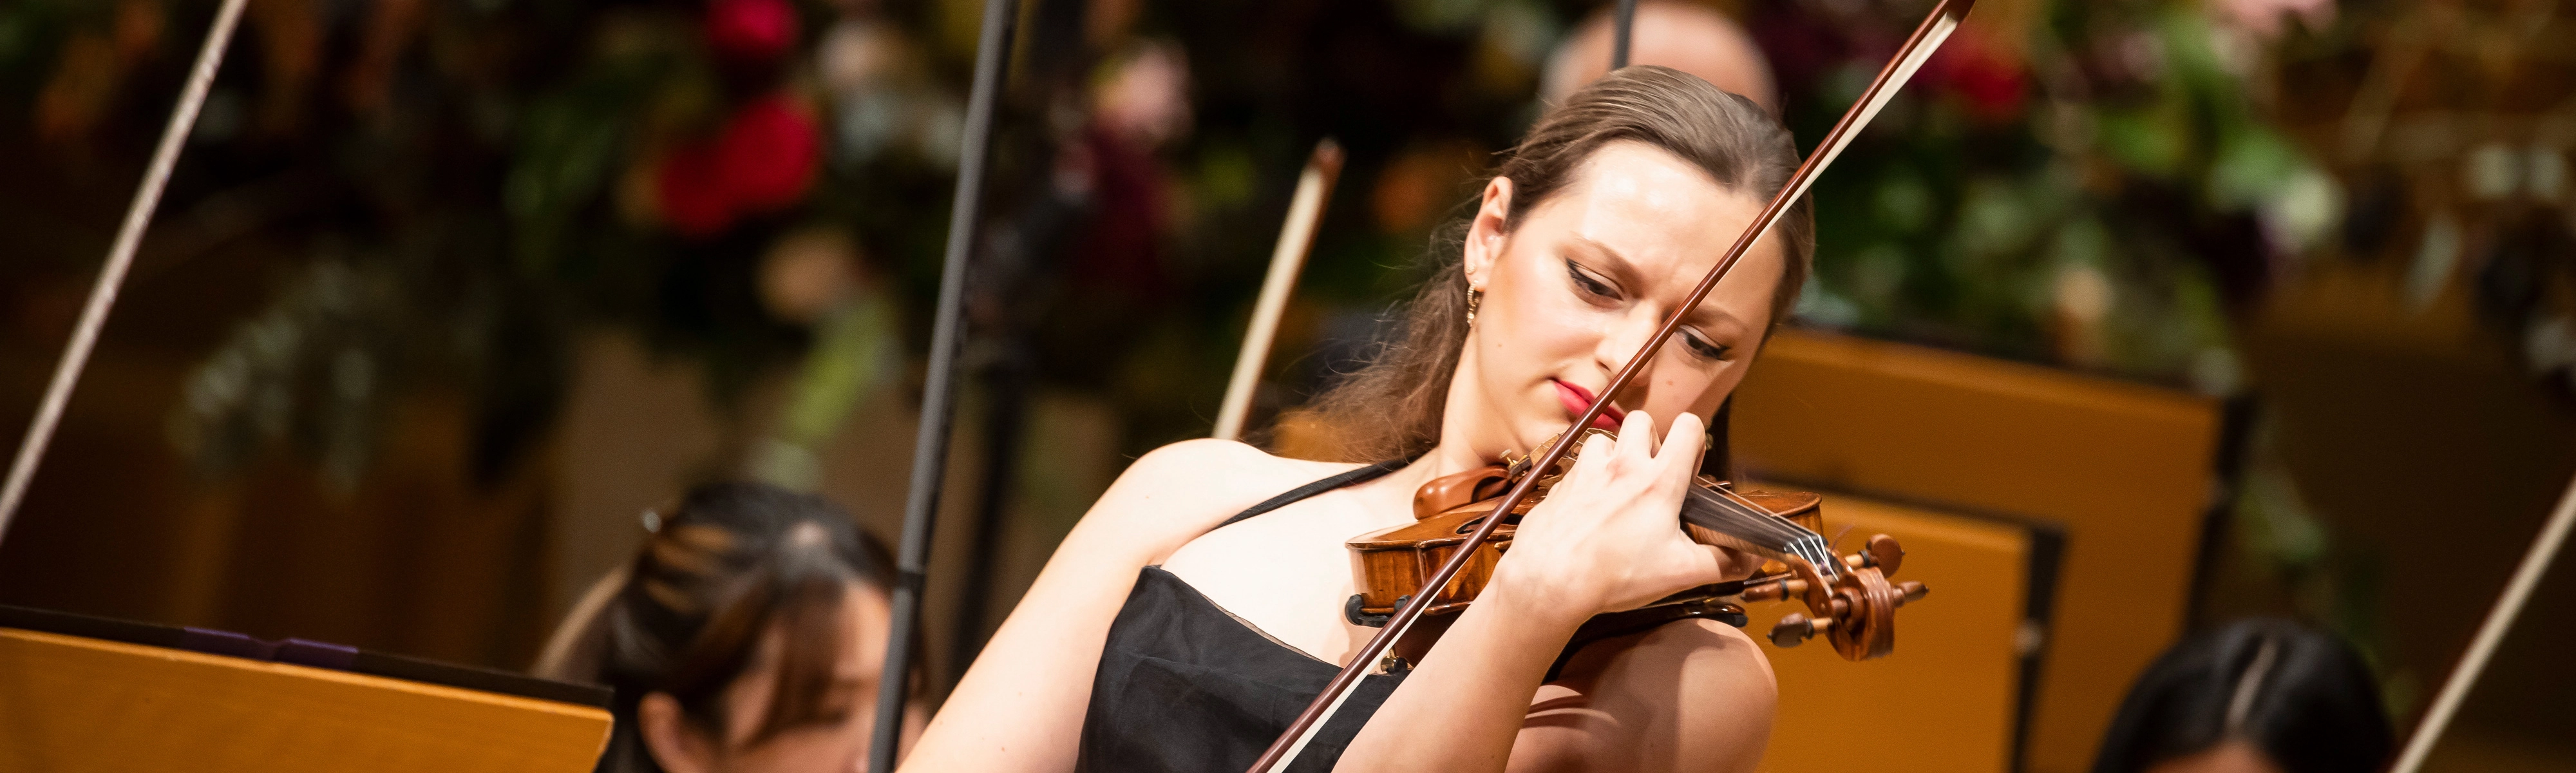 Joseph Joachim Violinwettbewerb 2021: Finalkonzert von Maria Ioudenitch im Großen NDR Sendesaal